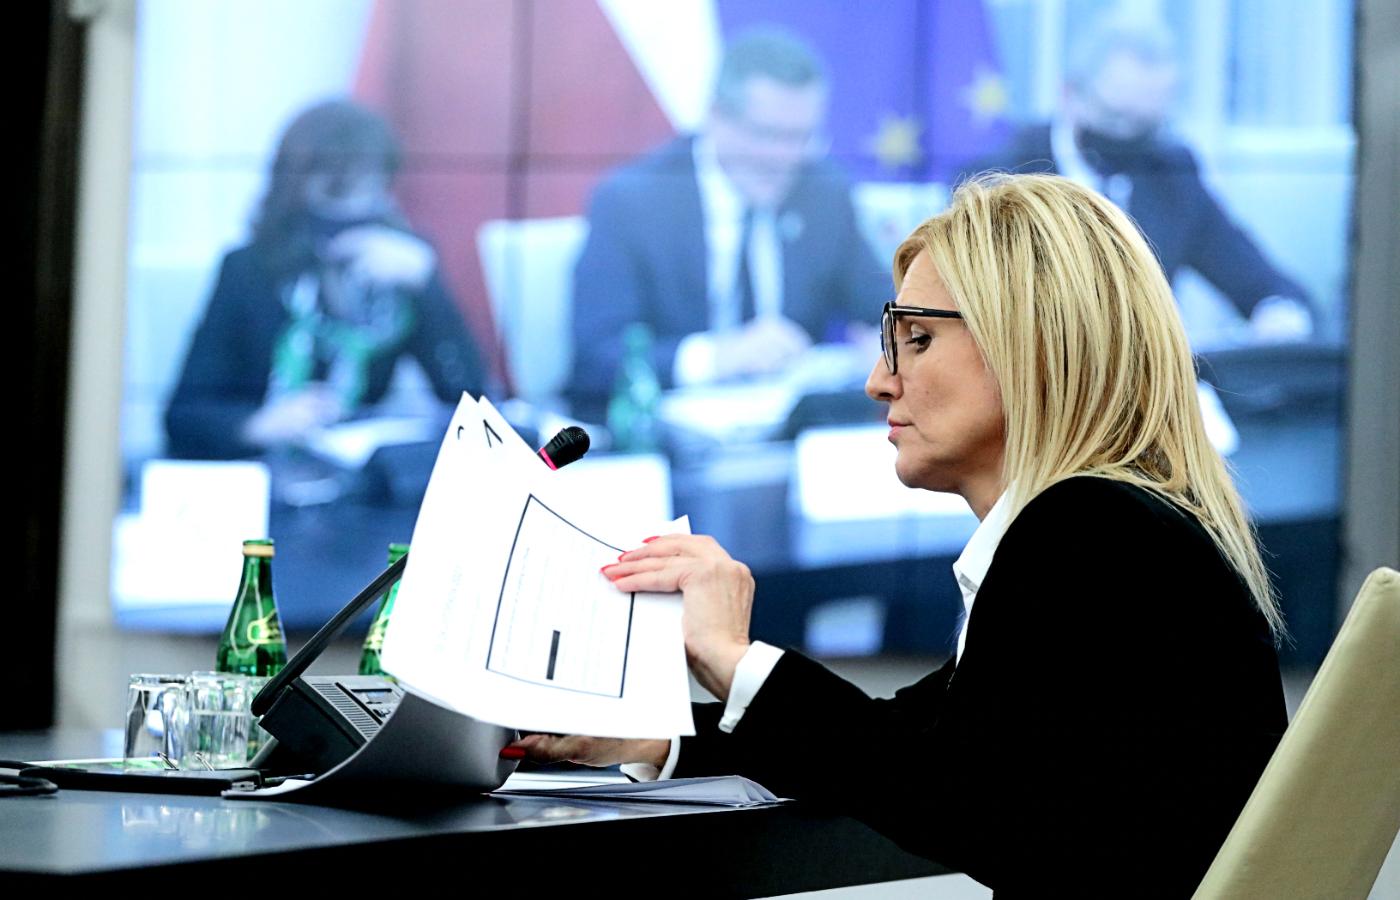 Niezależna prokuratorka Ewa Wrzosek zeznaje przed senacką komisją badającą sprawę inwigilowania obywateli przez władzę.